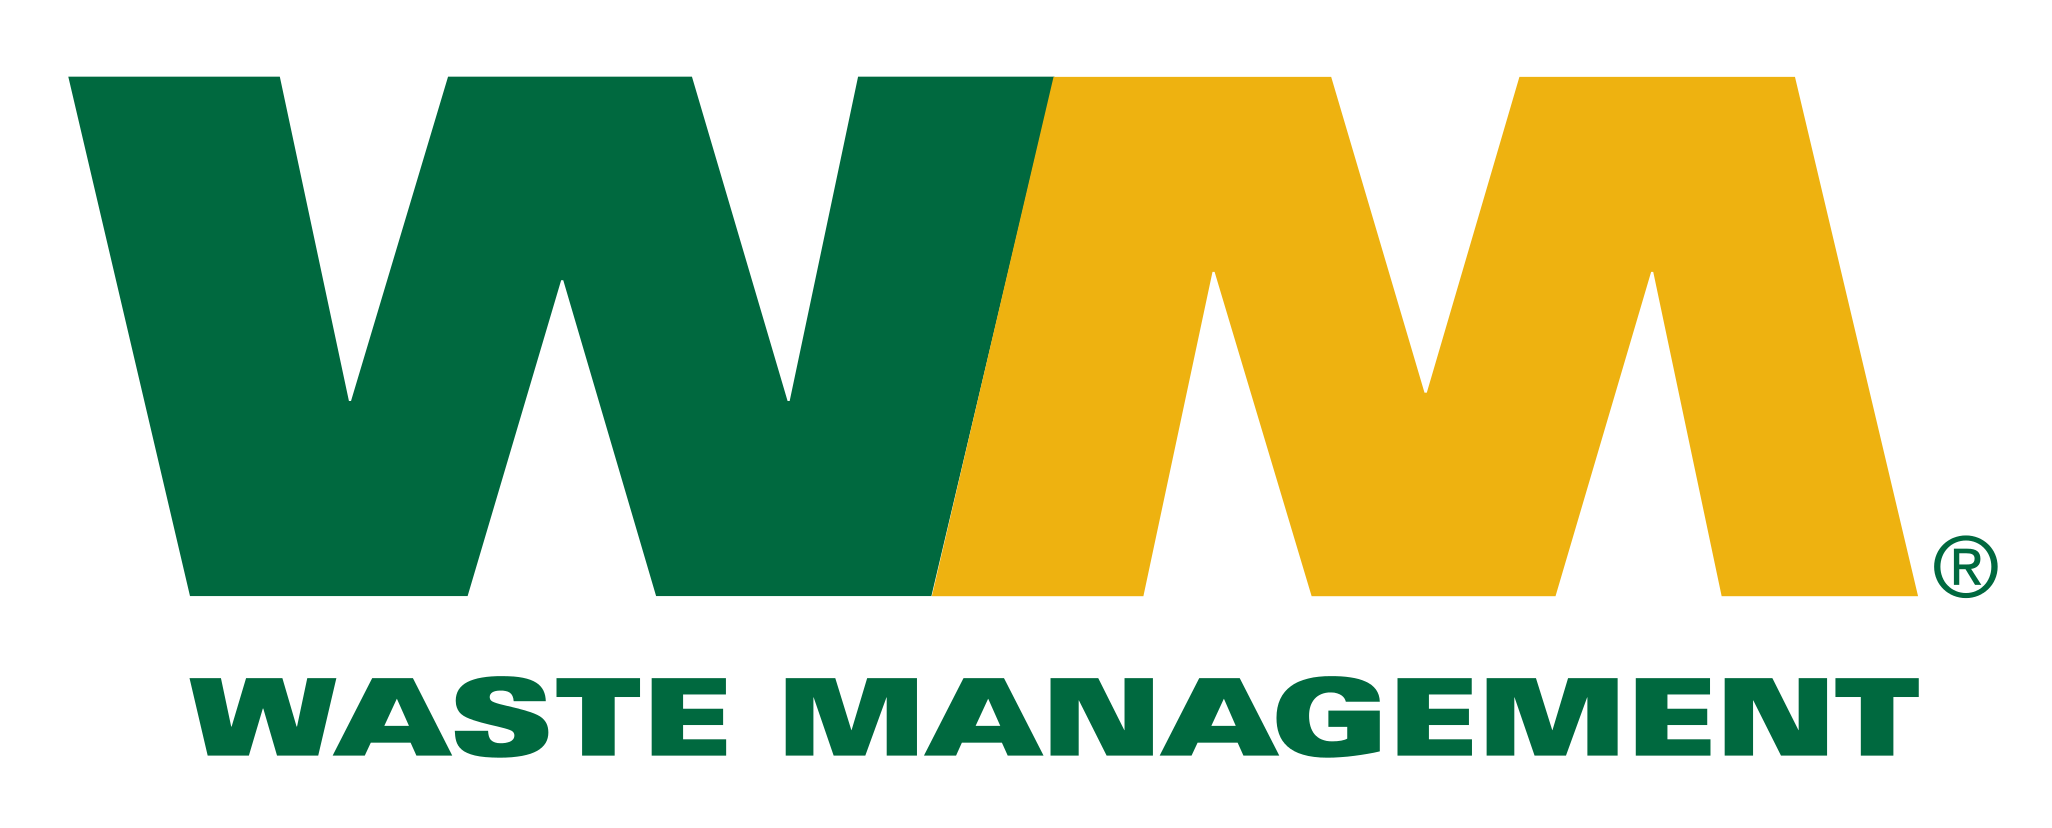 Waste Management Logo PNG Image